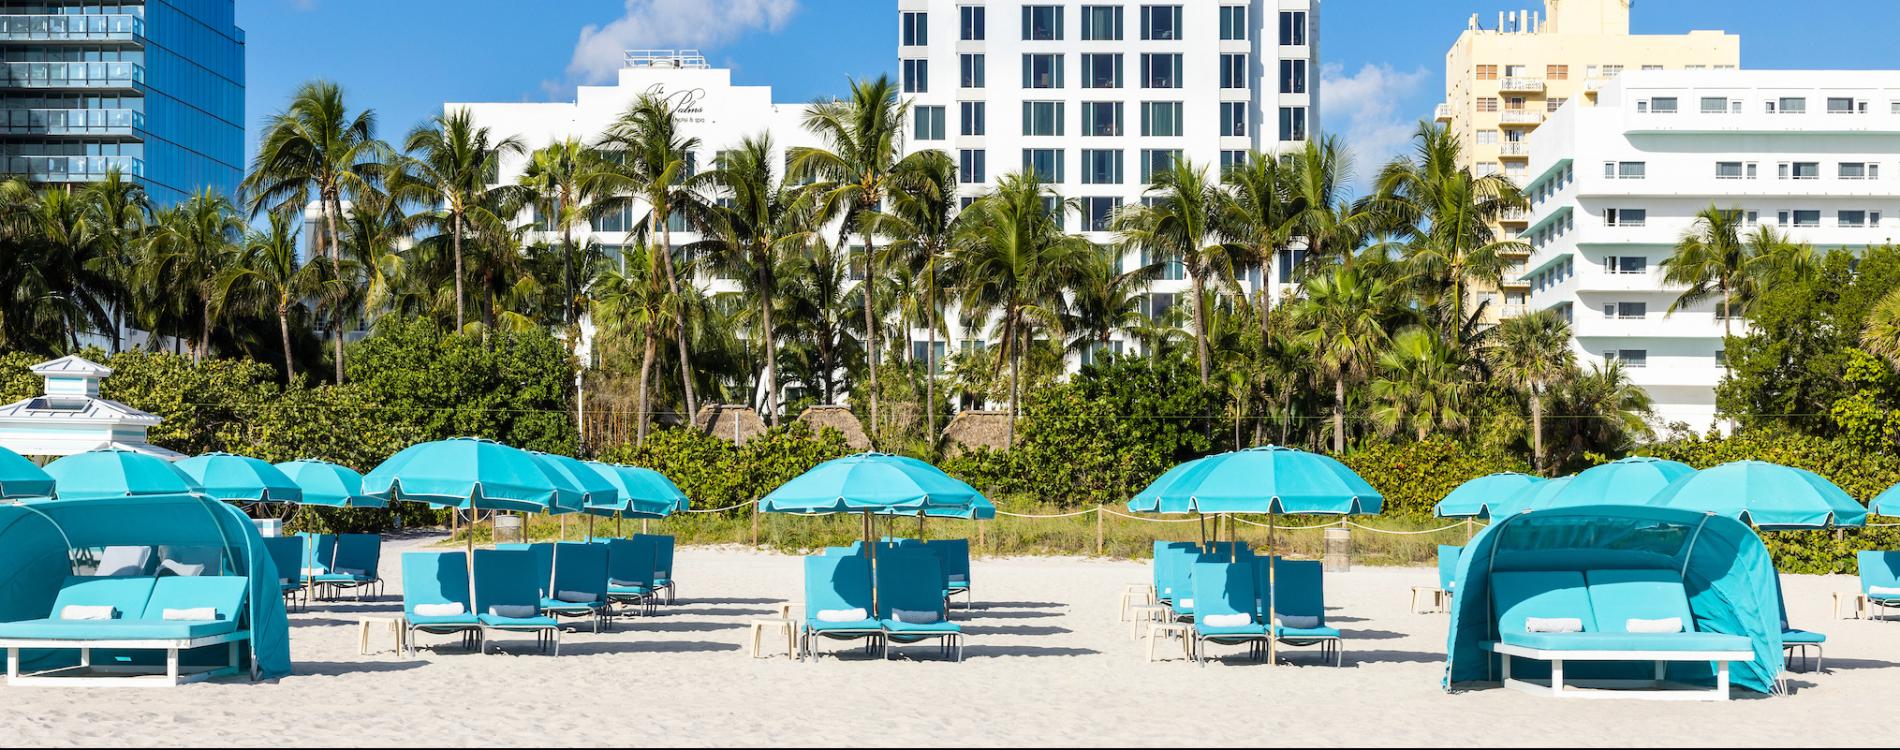 The Palms Hotel & Spa, Miami Beach (FL)